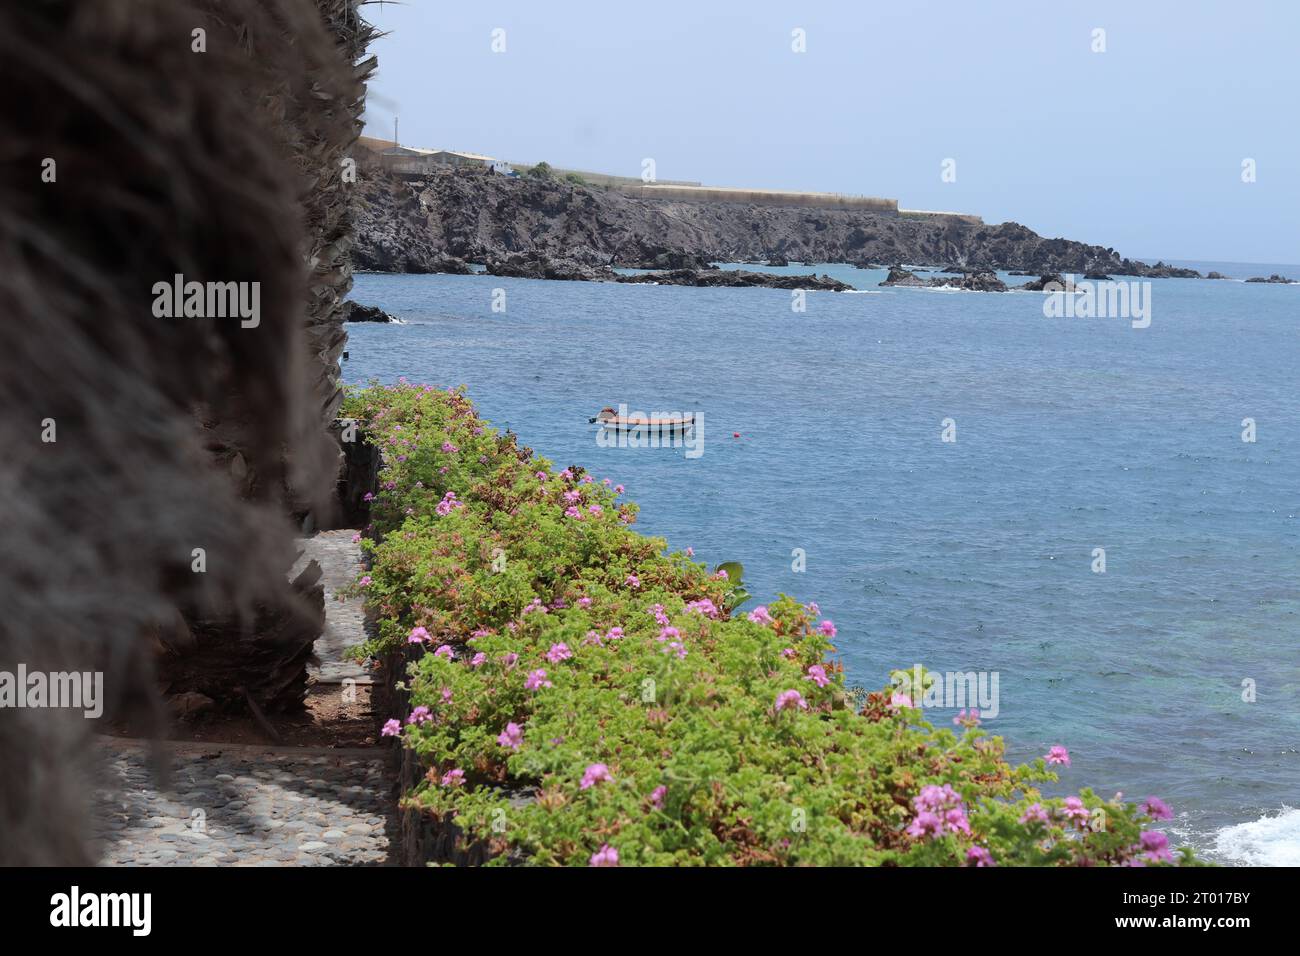 Peacefull vue sur l'océan, promenade pédestre Alcala Tenerfie, avec un petit bateau et quelques fleurs roses beatifull Banque D'Images